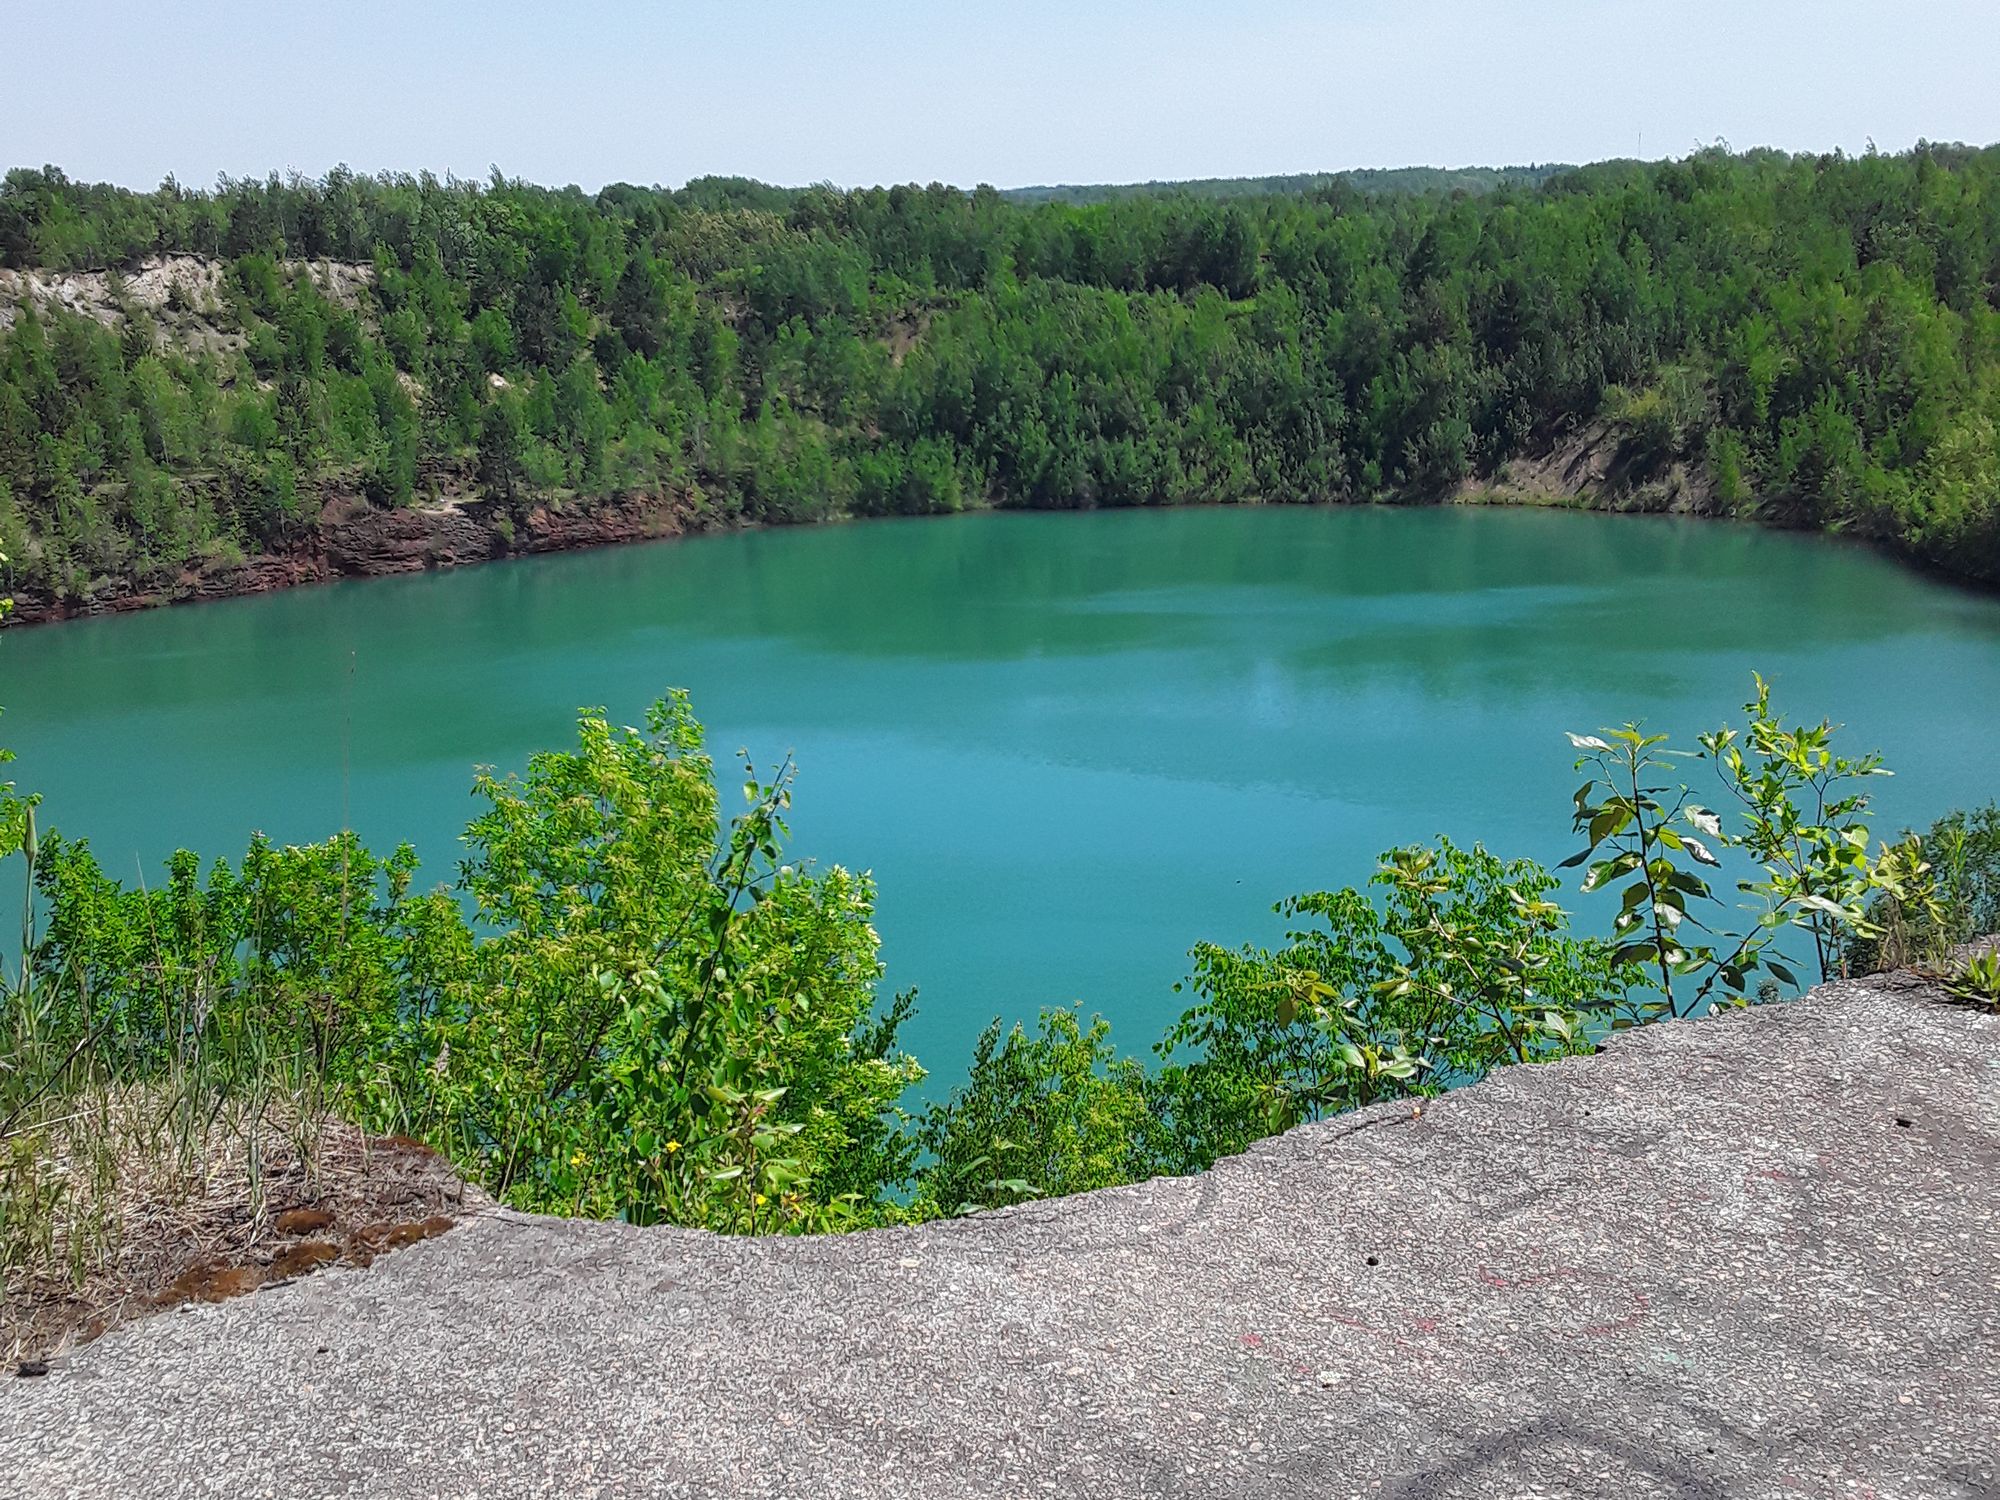 A reservoir overlook